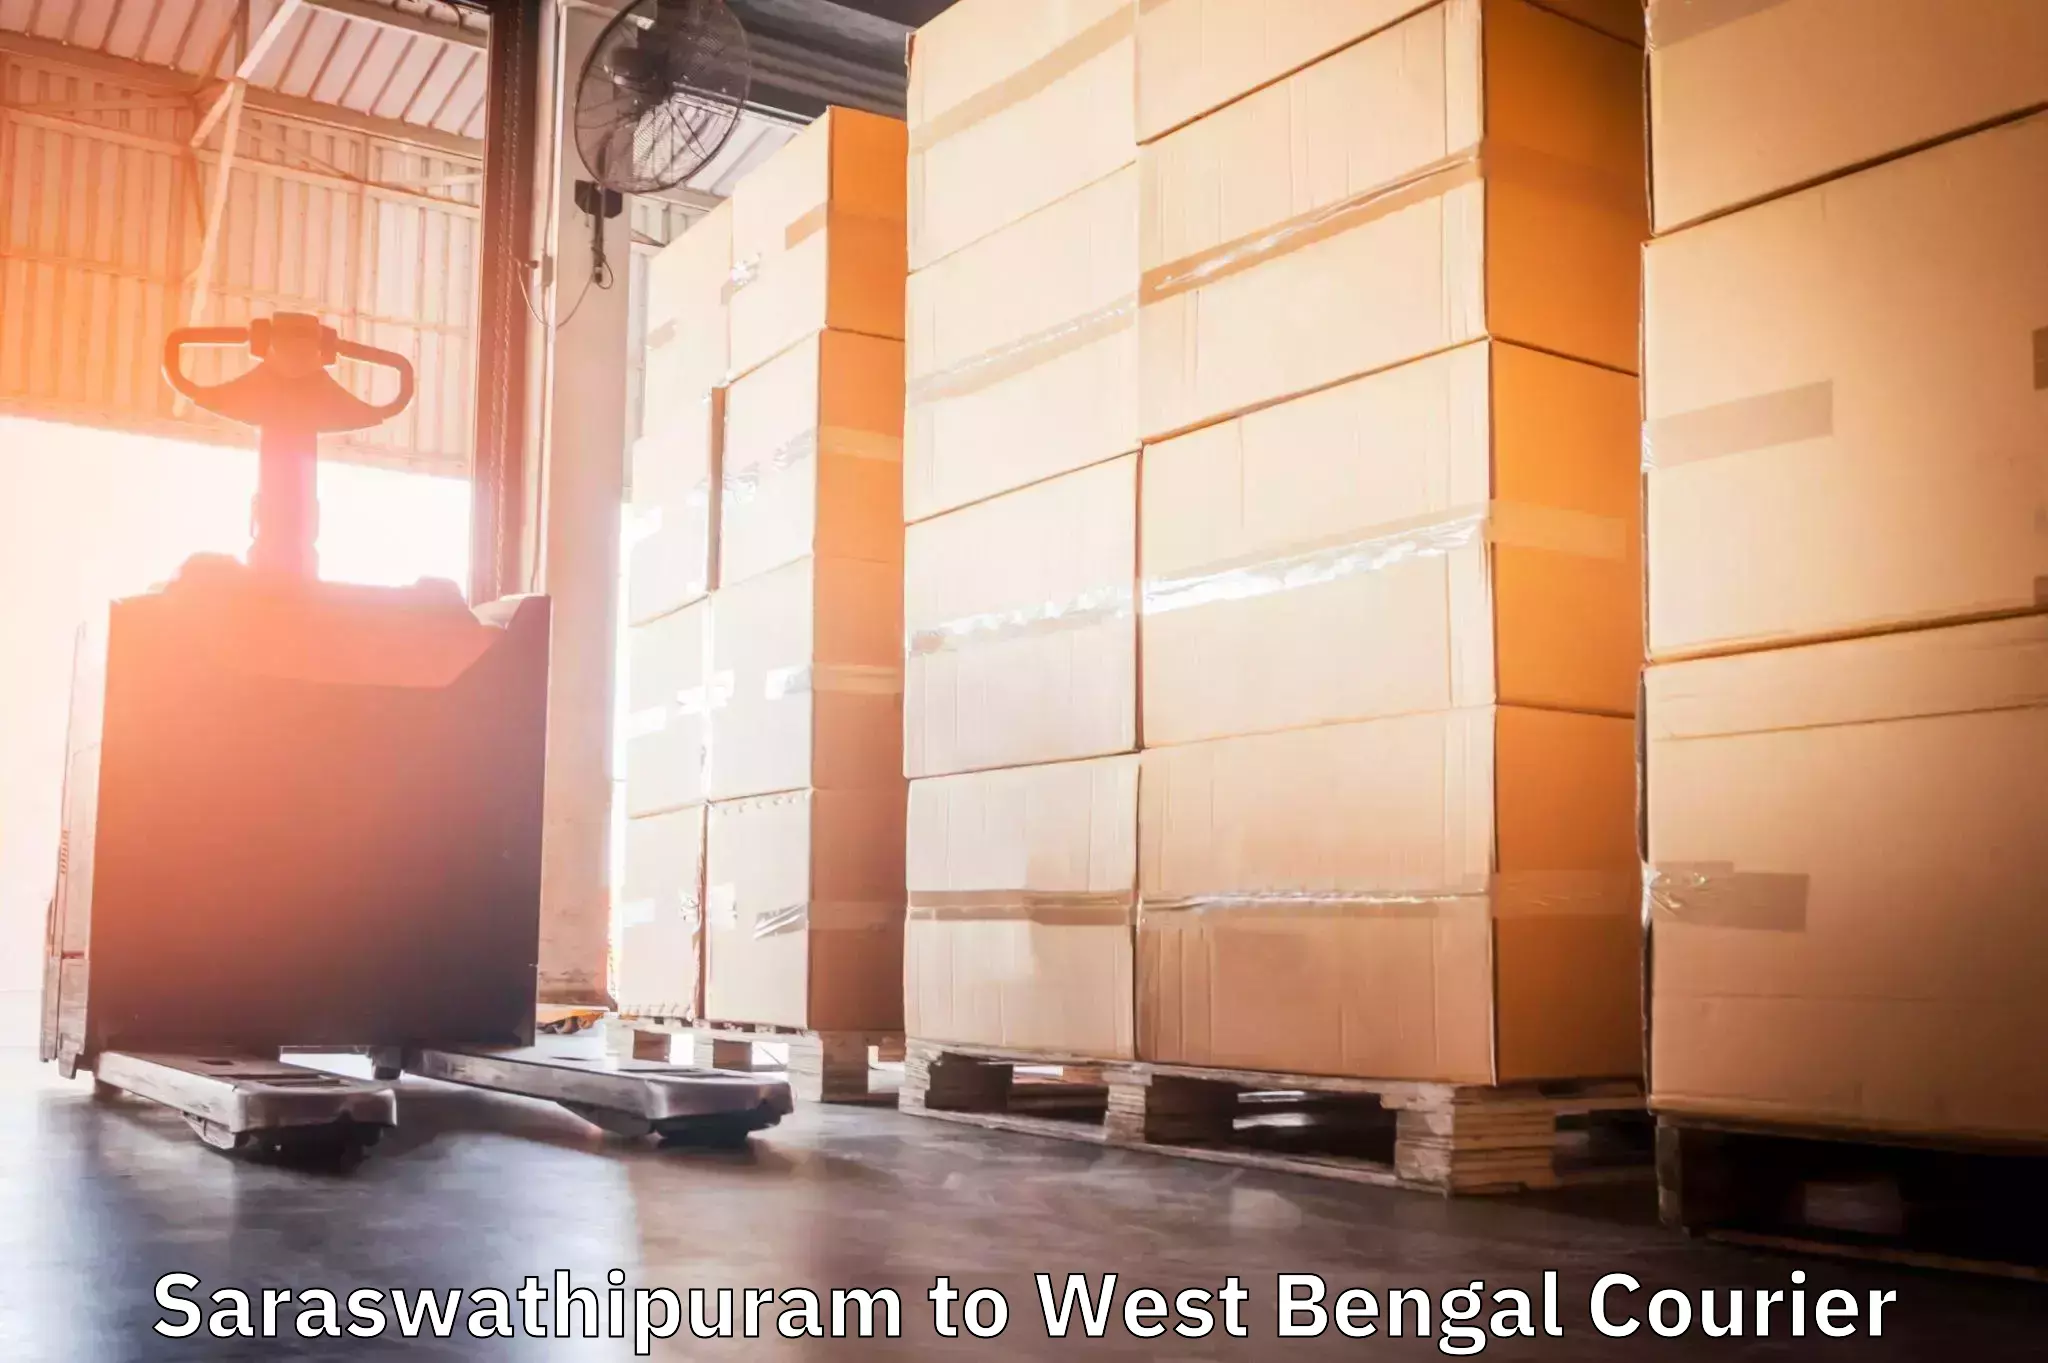 Next-day freight services Saraswathipuram to Baneswar